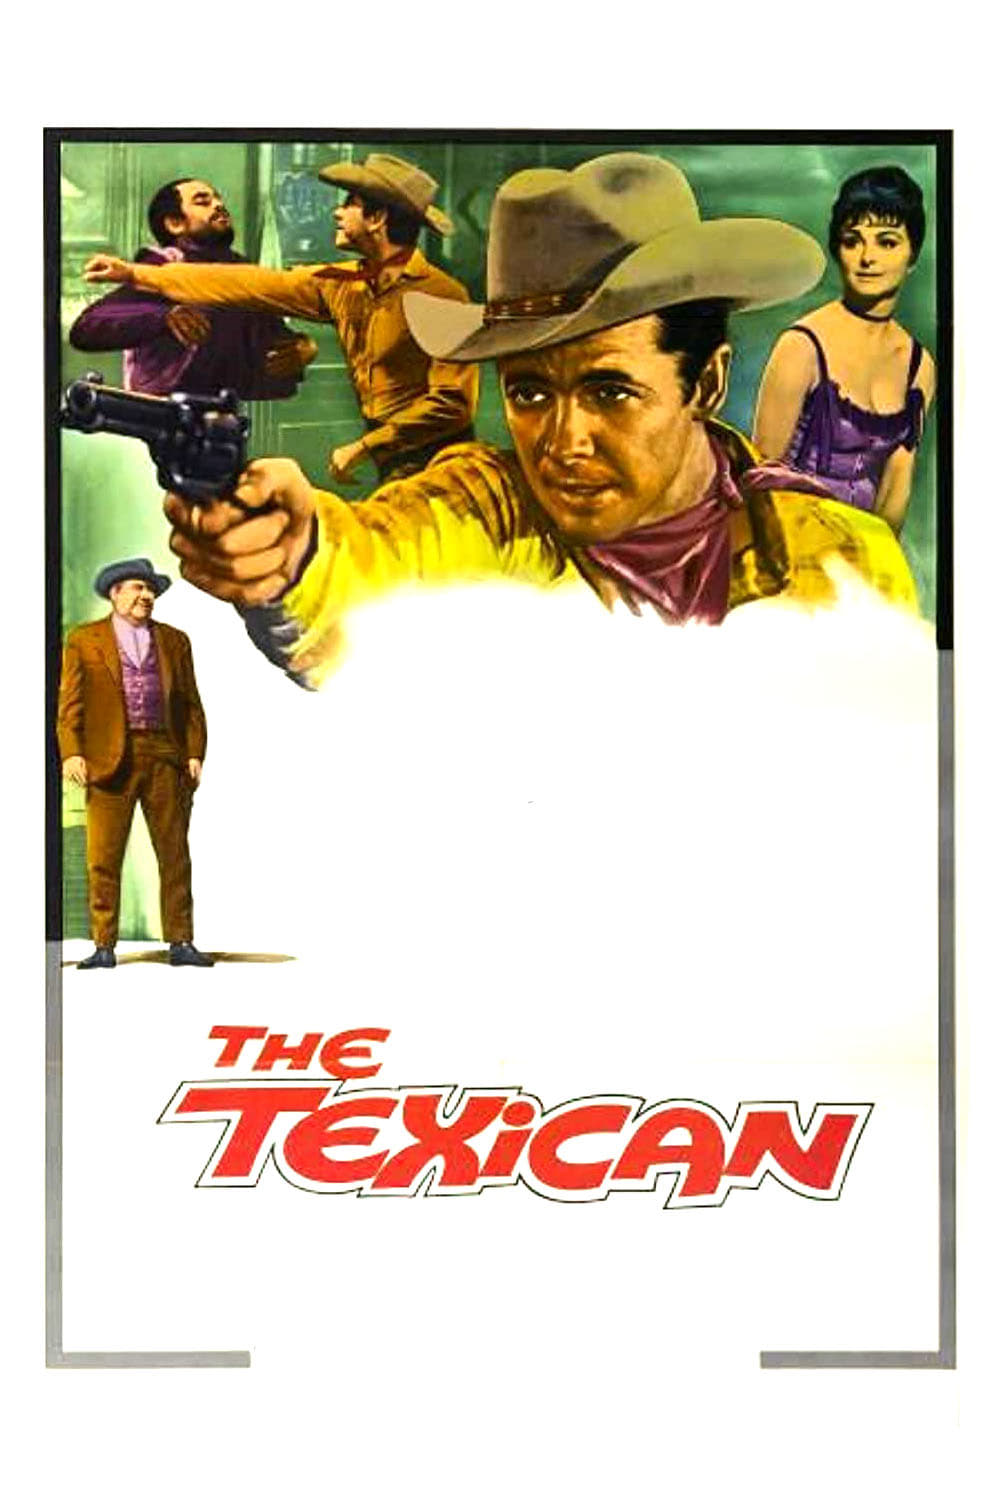 El Texican